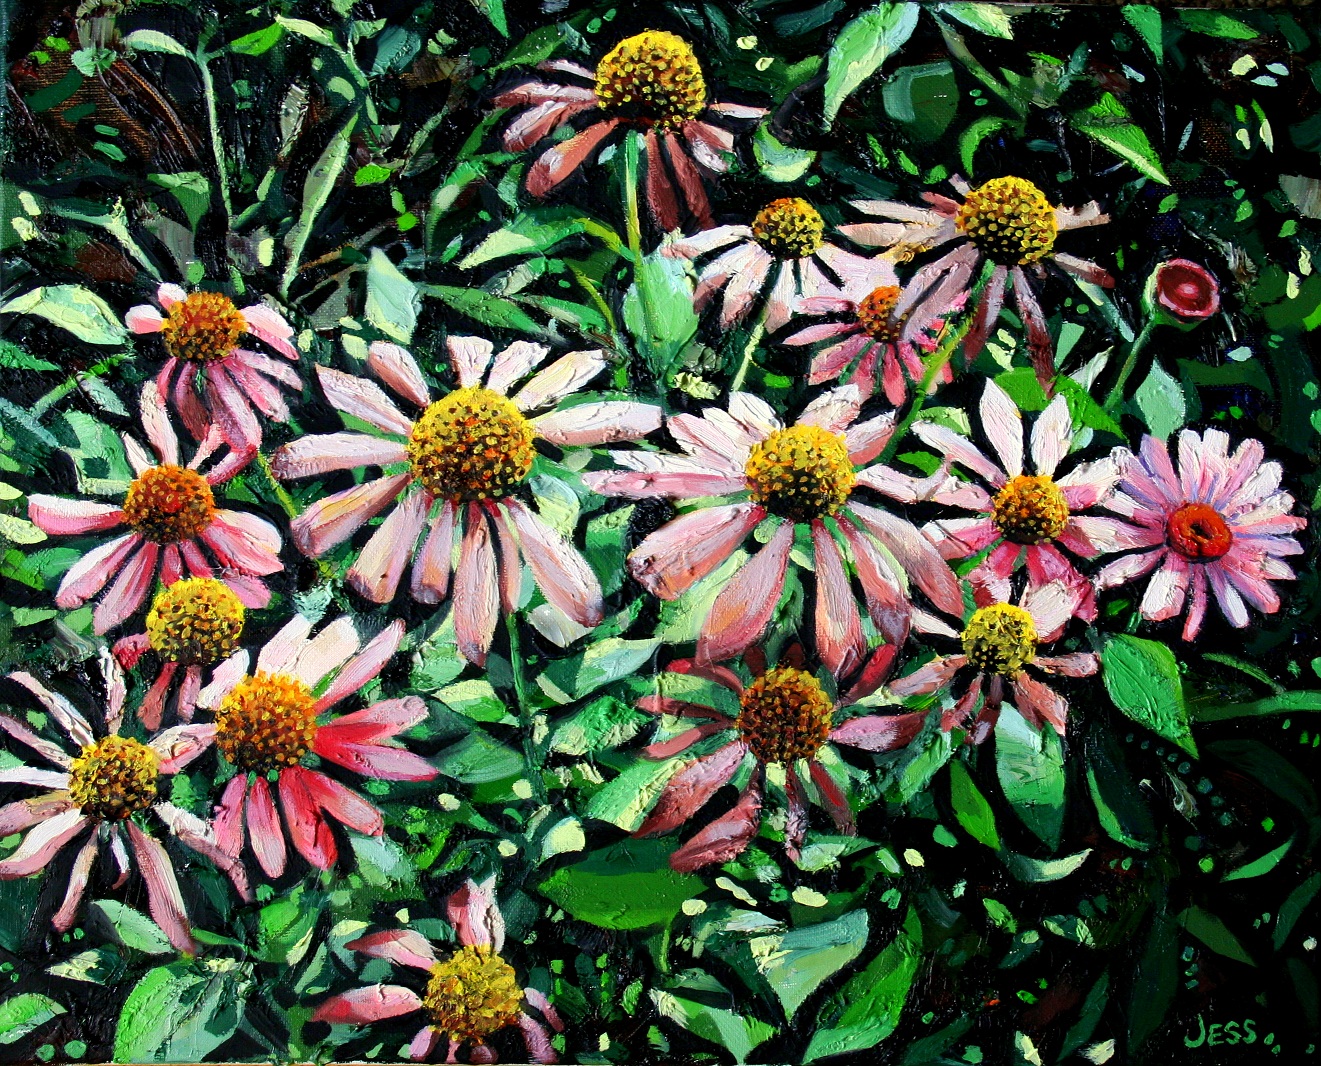 Pink Susans, oil on canvas, 16 x 20 in, Jessica Siemens 2013